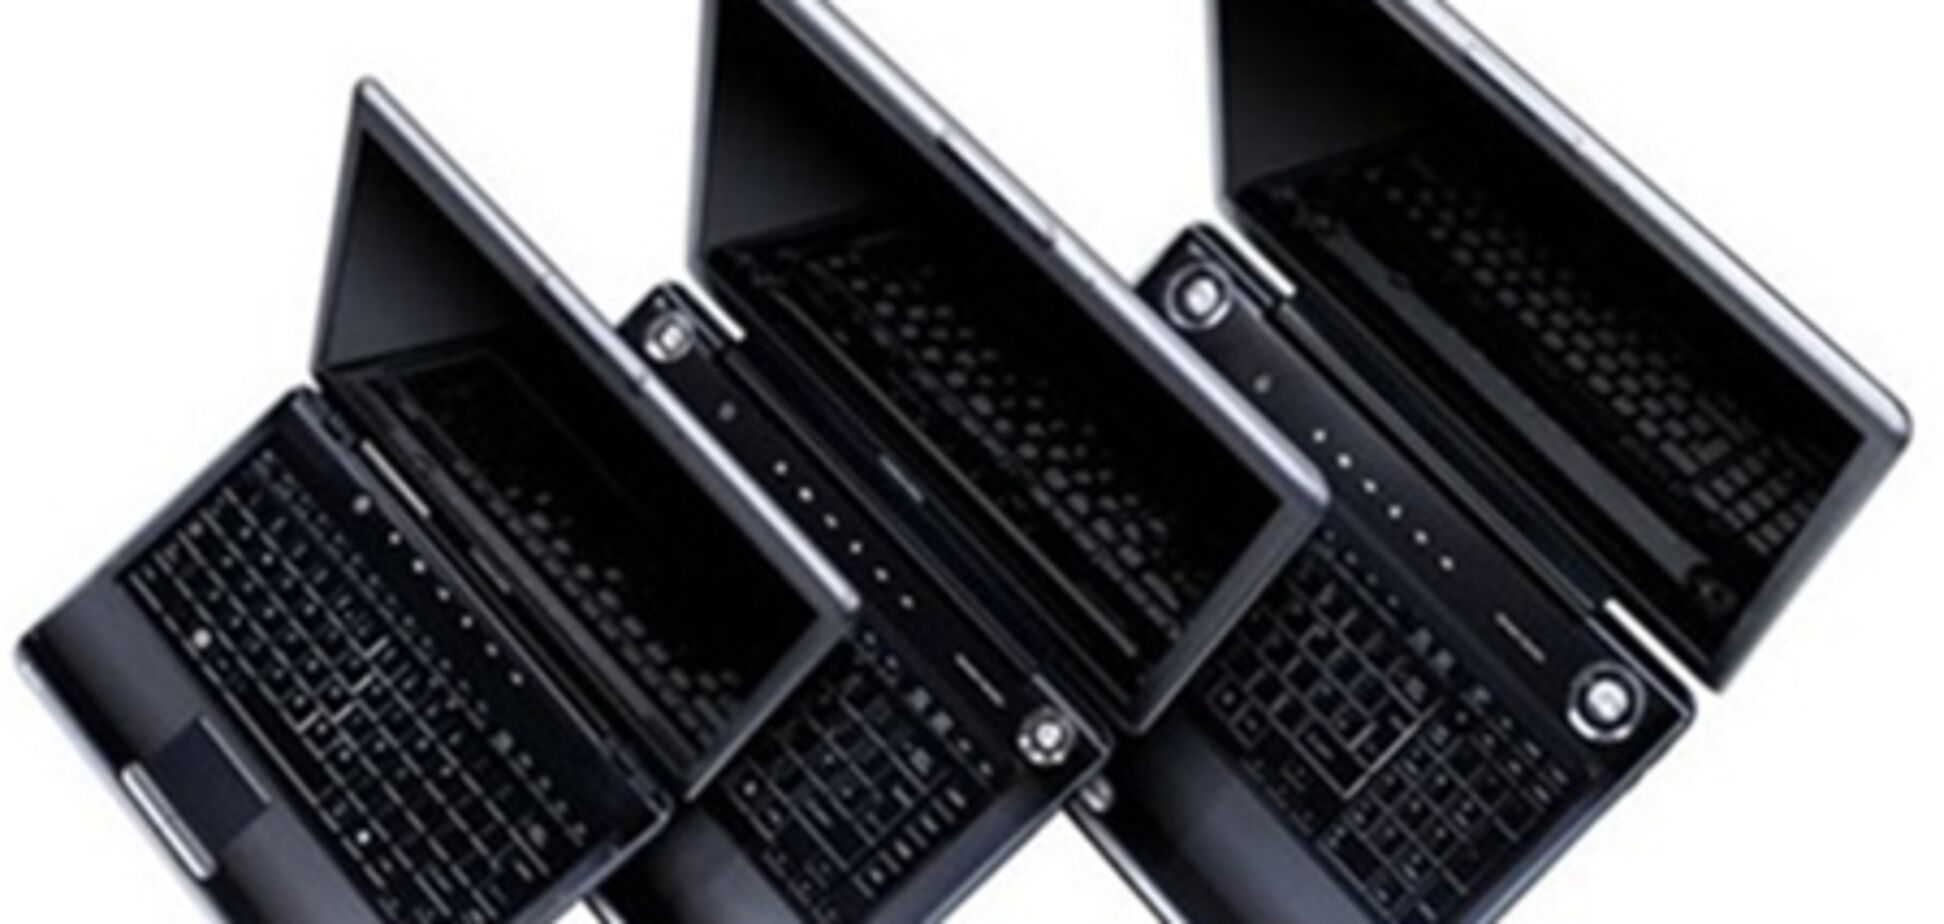 Ноутбуки Asus и Acer чаще всего перепродаются в Интернете